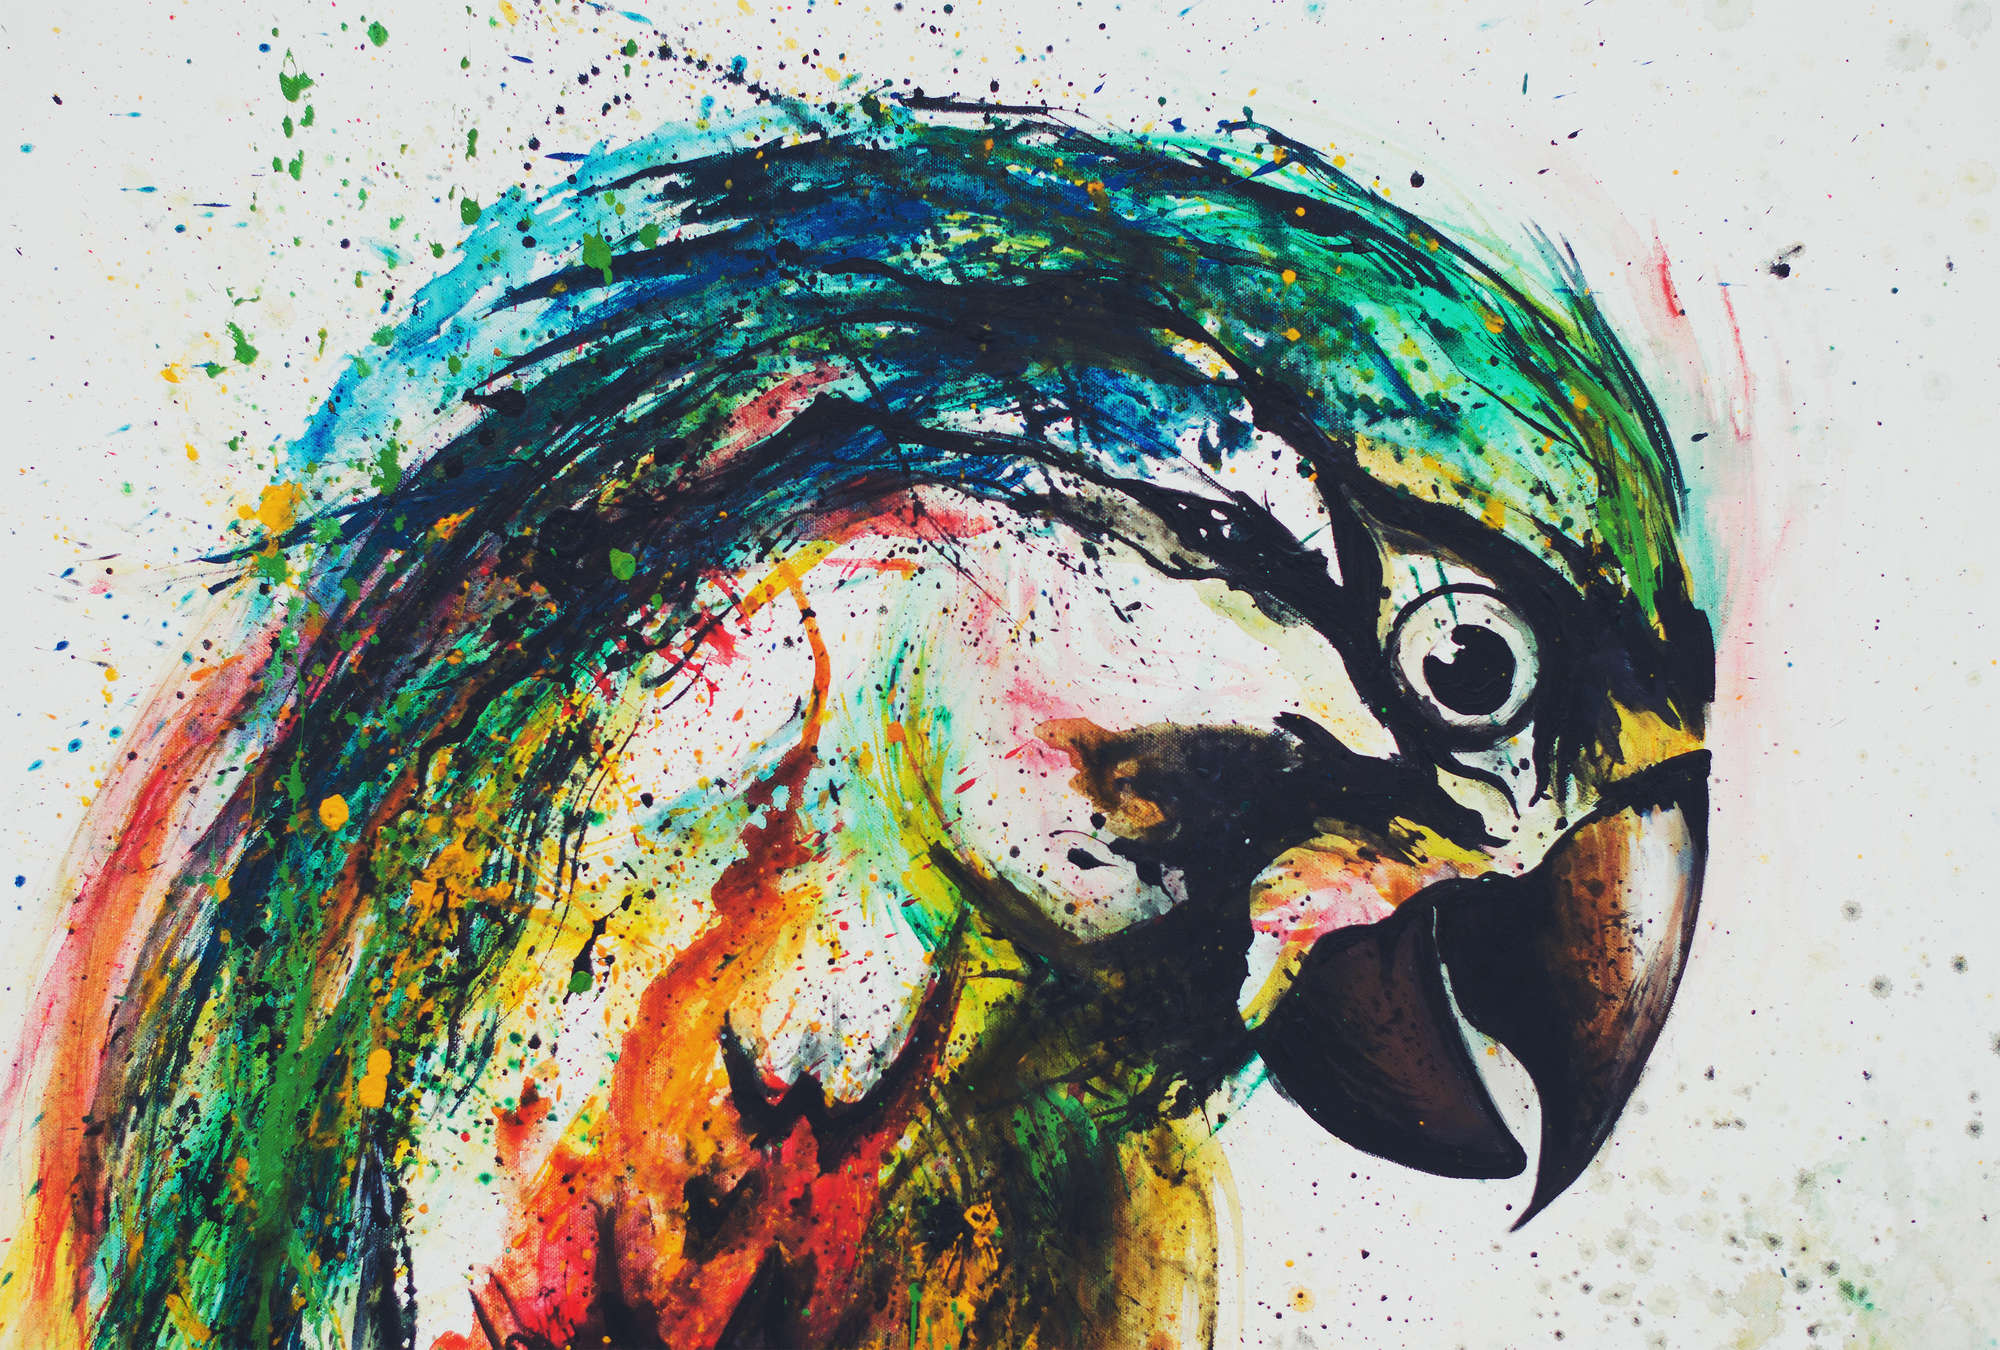             Disegno colorato in stile pappagallo murale
        